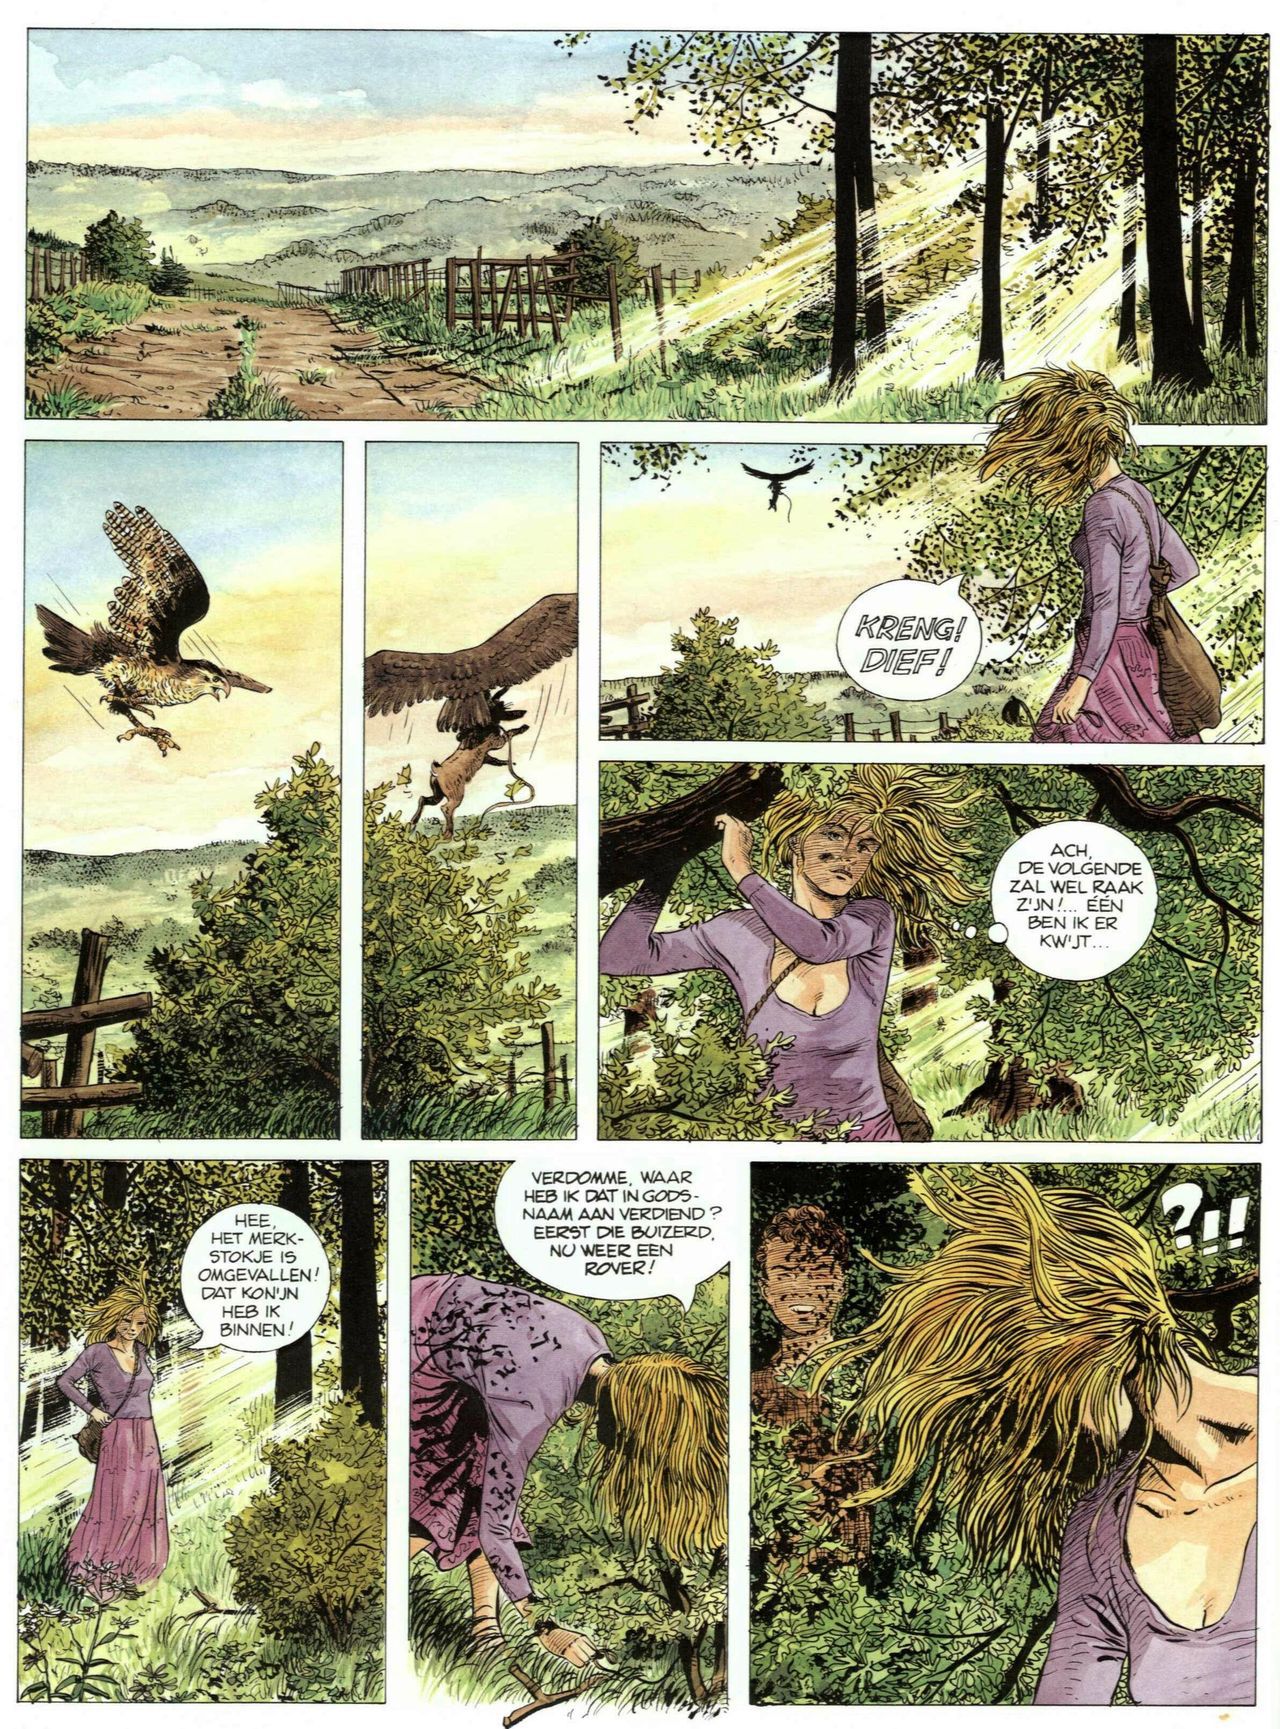 Bosliefje - 01 - Julien (Dutch) Franstalige strips die op deze site staan, hier is de Nederlandse uitgave! 25